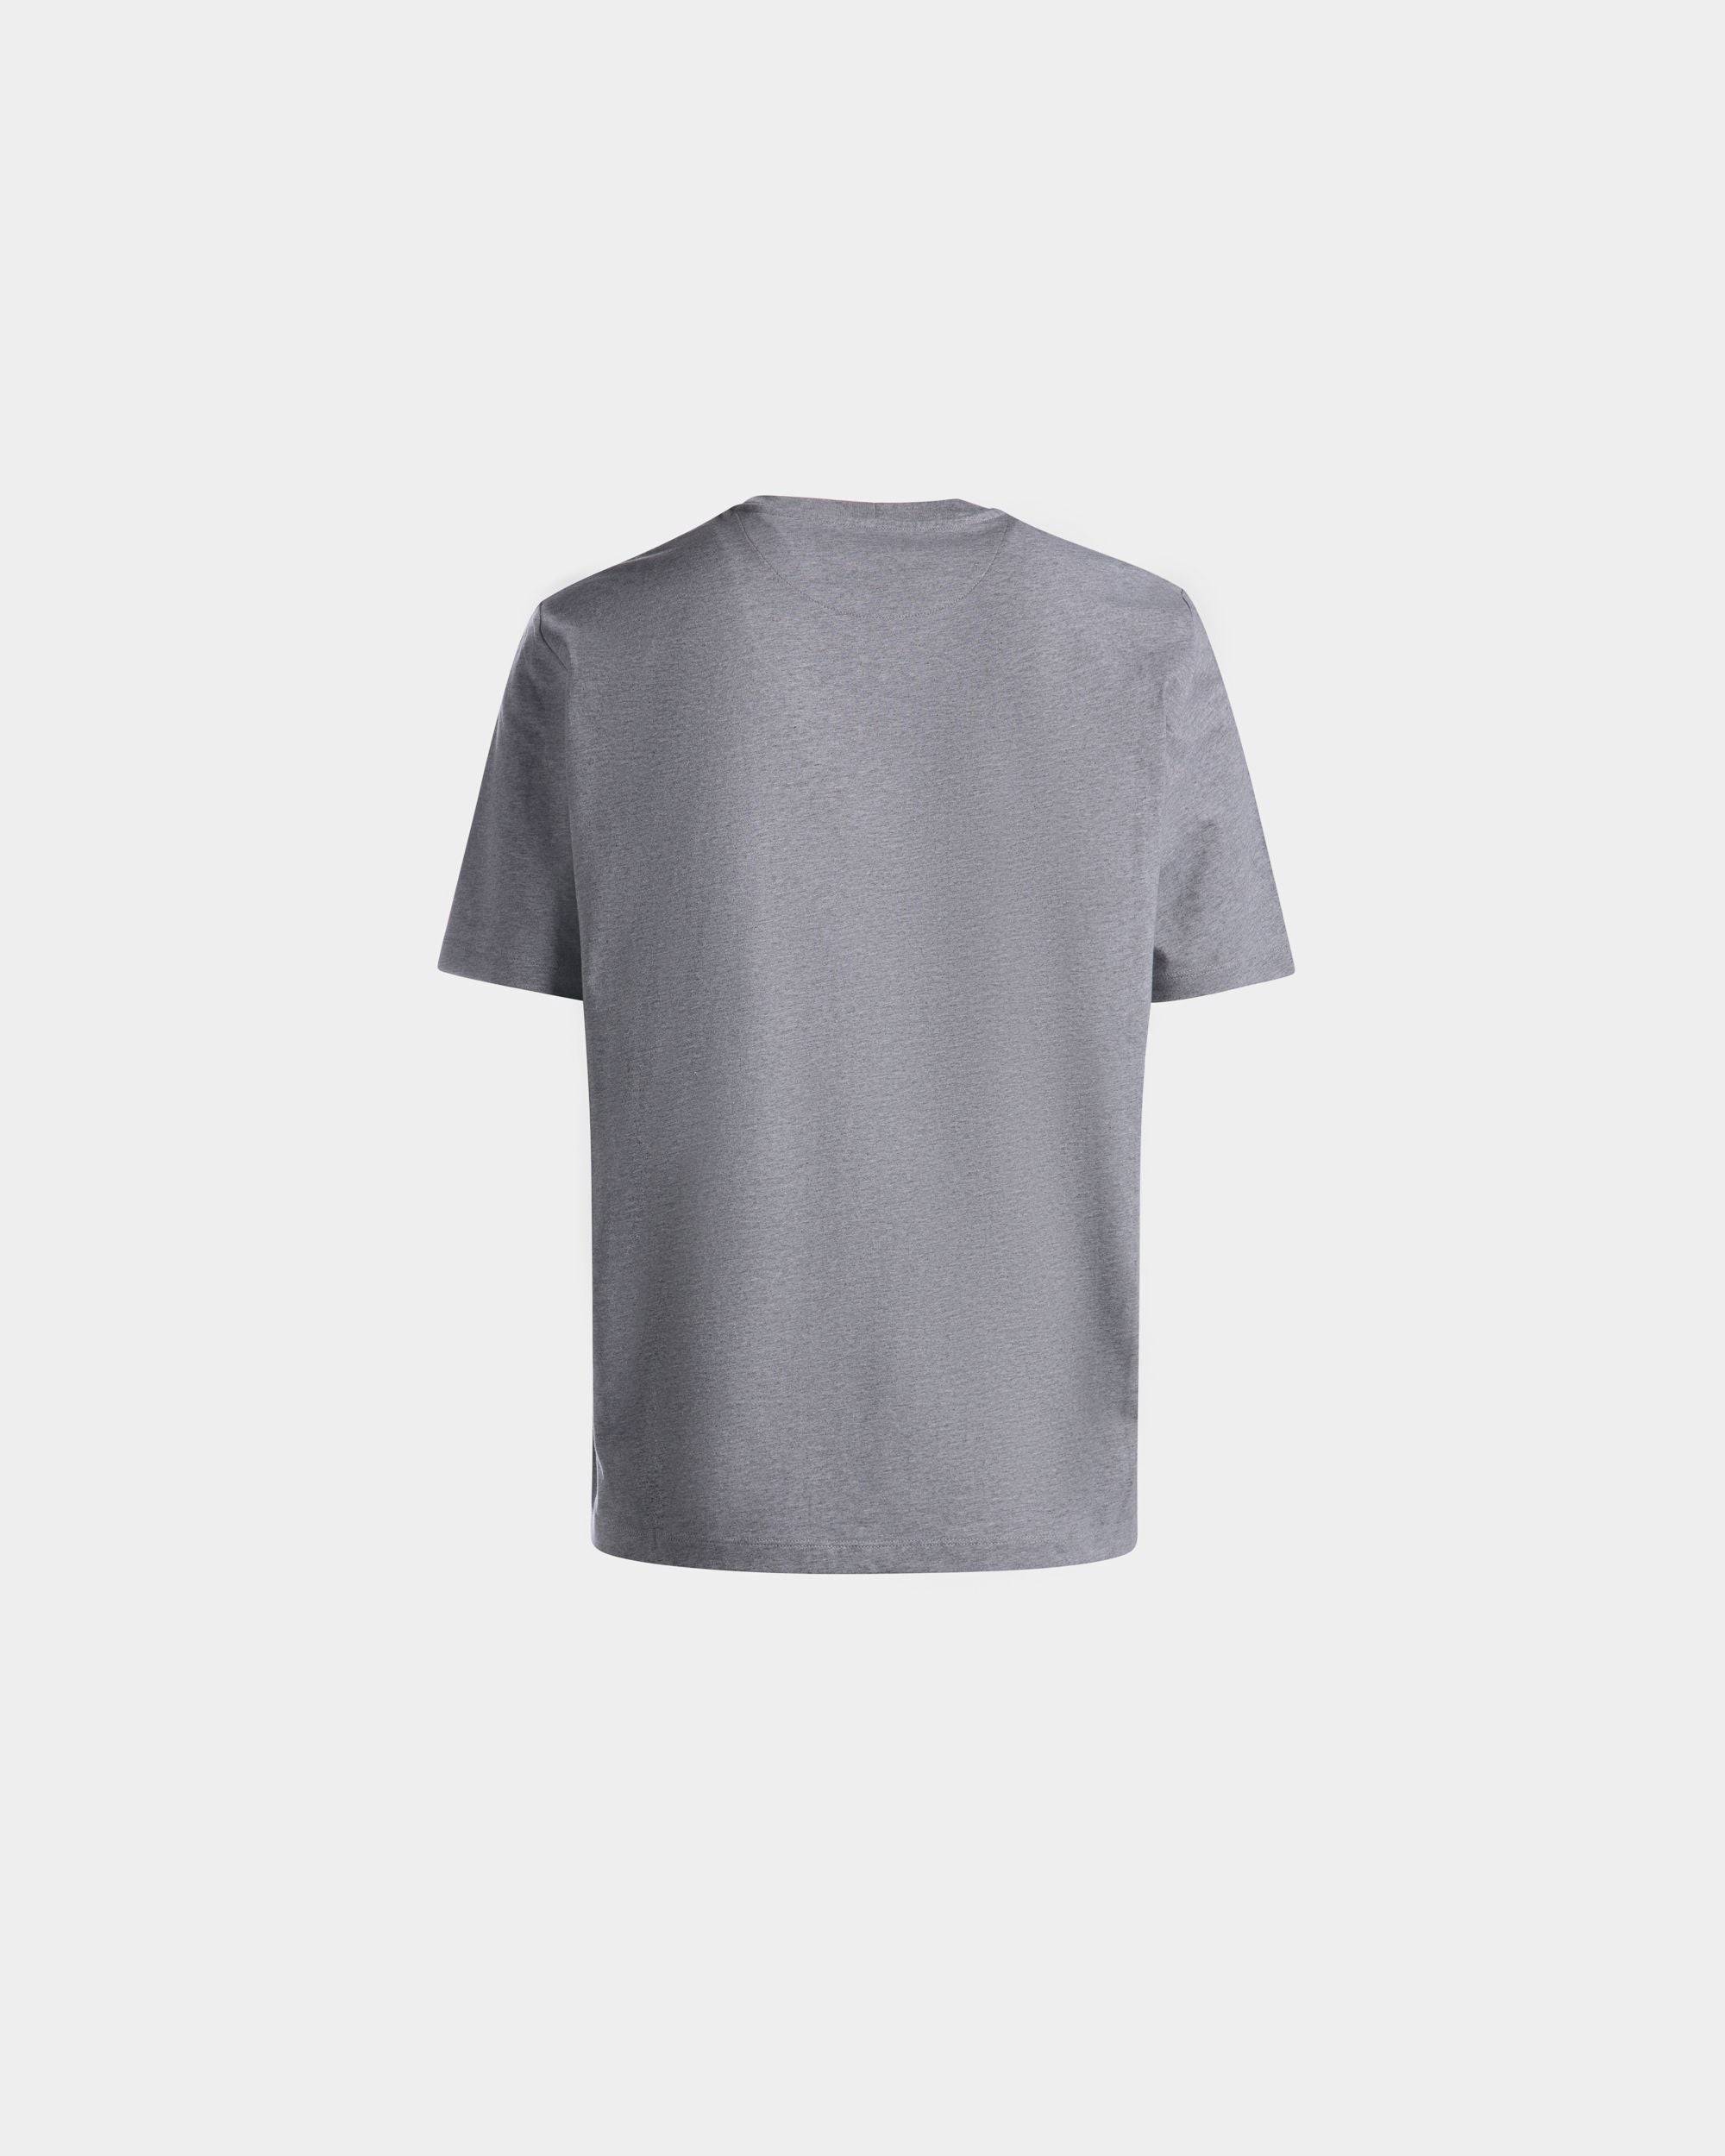 T-Shirt für Herren aus grau melierter Baumwolle | Bally | Still Life Rückseite